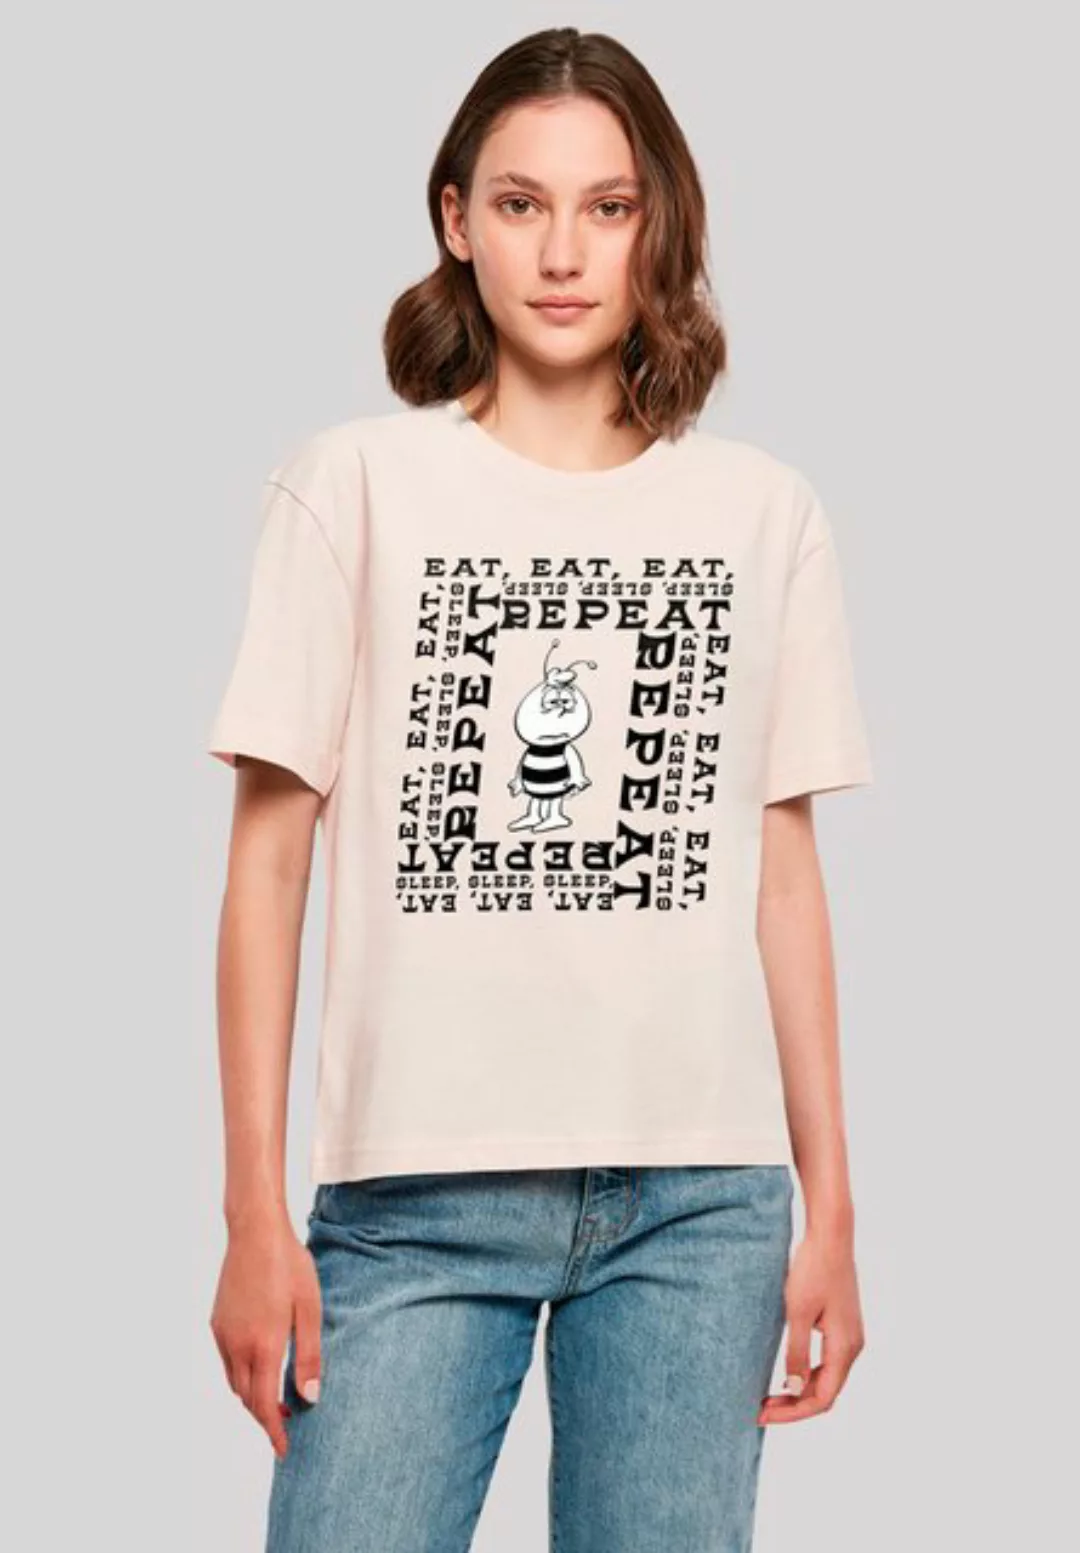 F4NT4STIC T-Shirt Die Biene Maja Willi In The Loop Nostalgie, Retro, Heroes günstig online kaufen